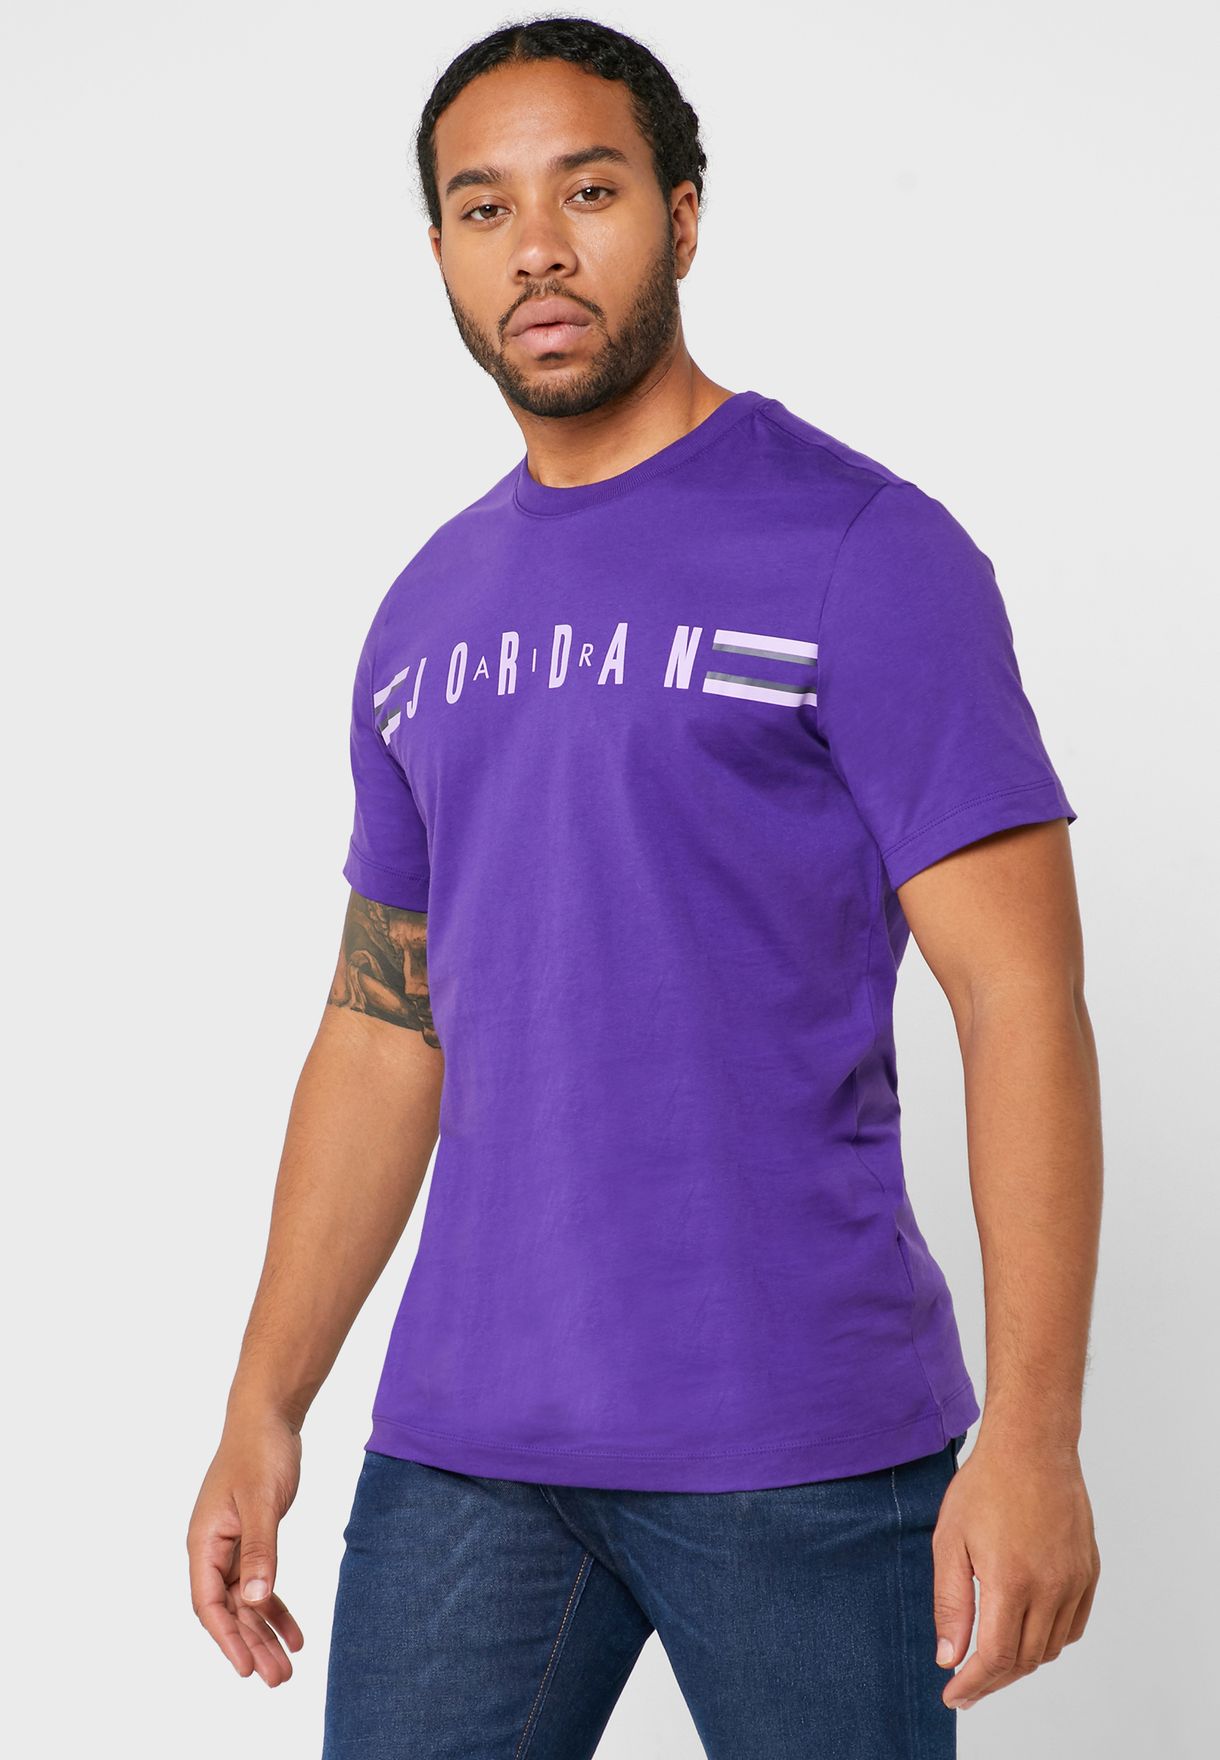 nike air purple shirt